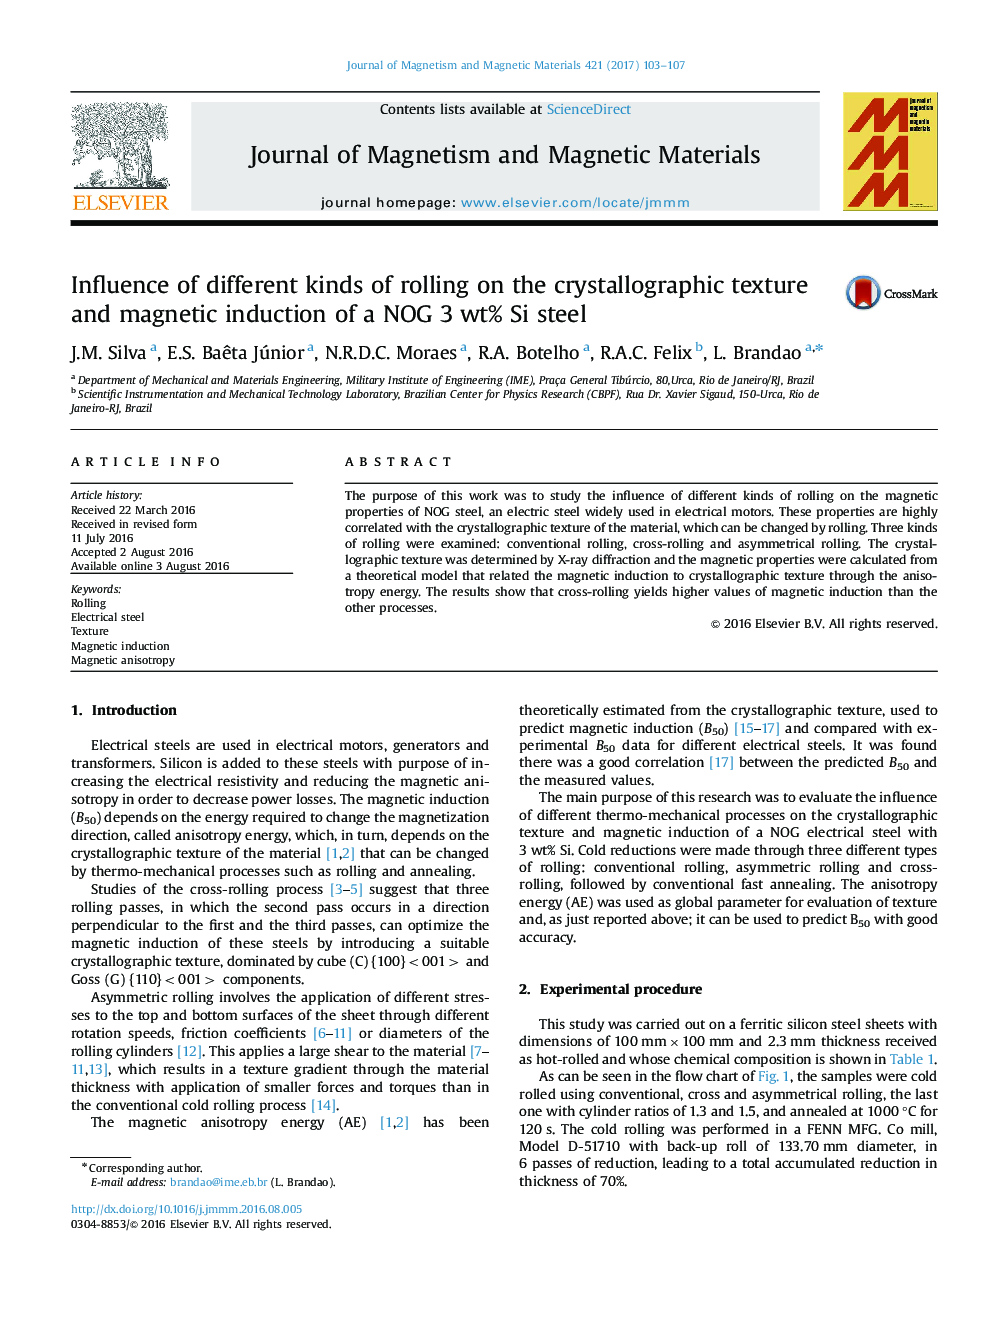 تأثیر انواع مختلف نورد بر روی بافت کریستالوگرافی و القای مغناطیسی فولاد سیلیکون NOG 3 wt٪